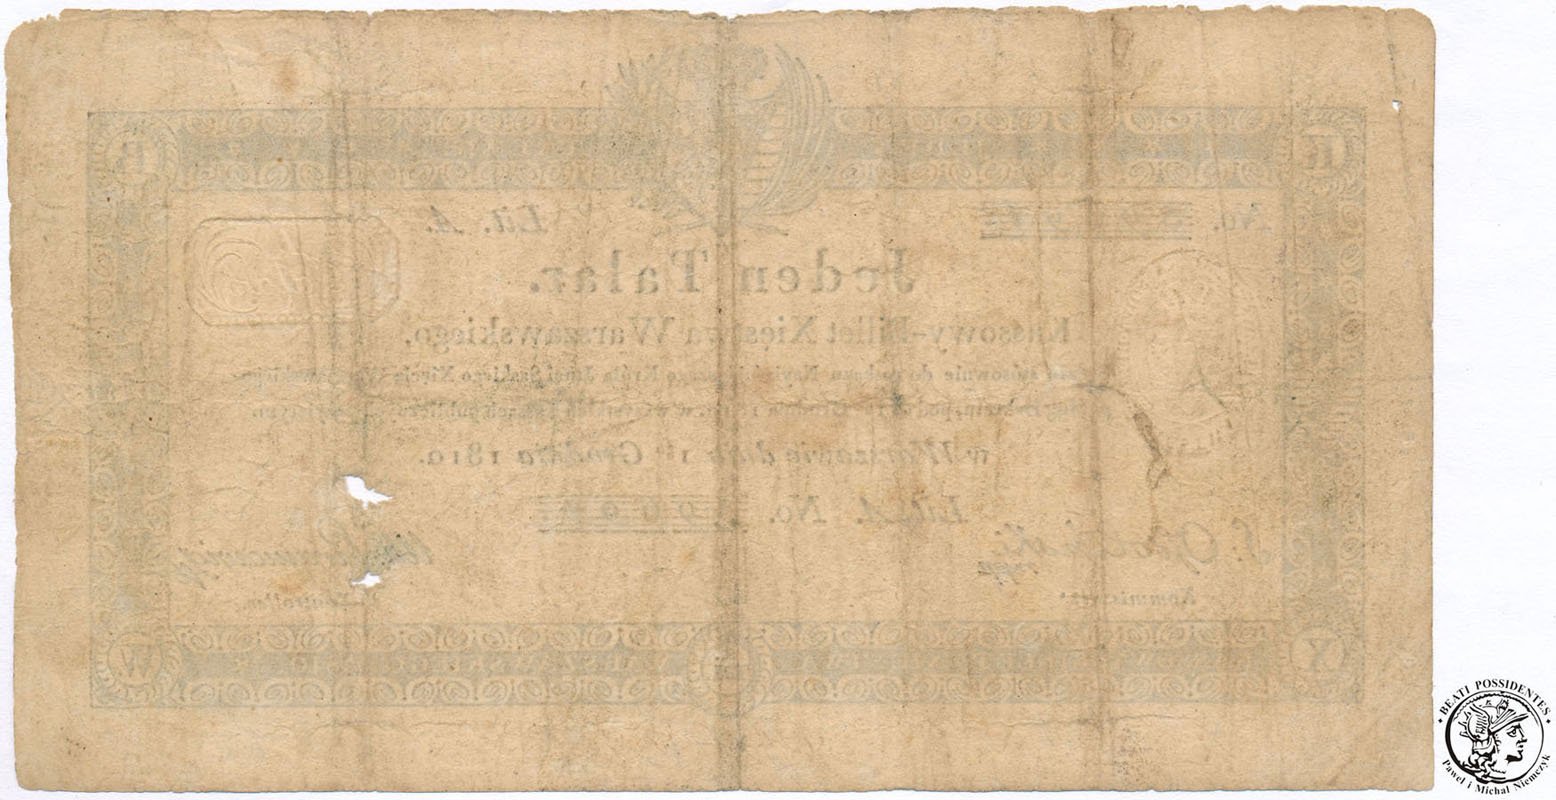 Księstwo Warszawskie banknot 1 talar 1810